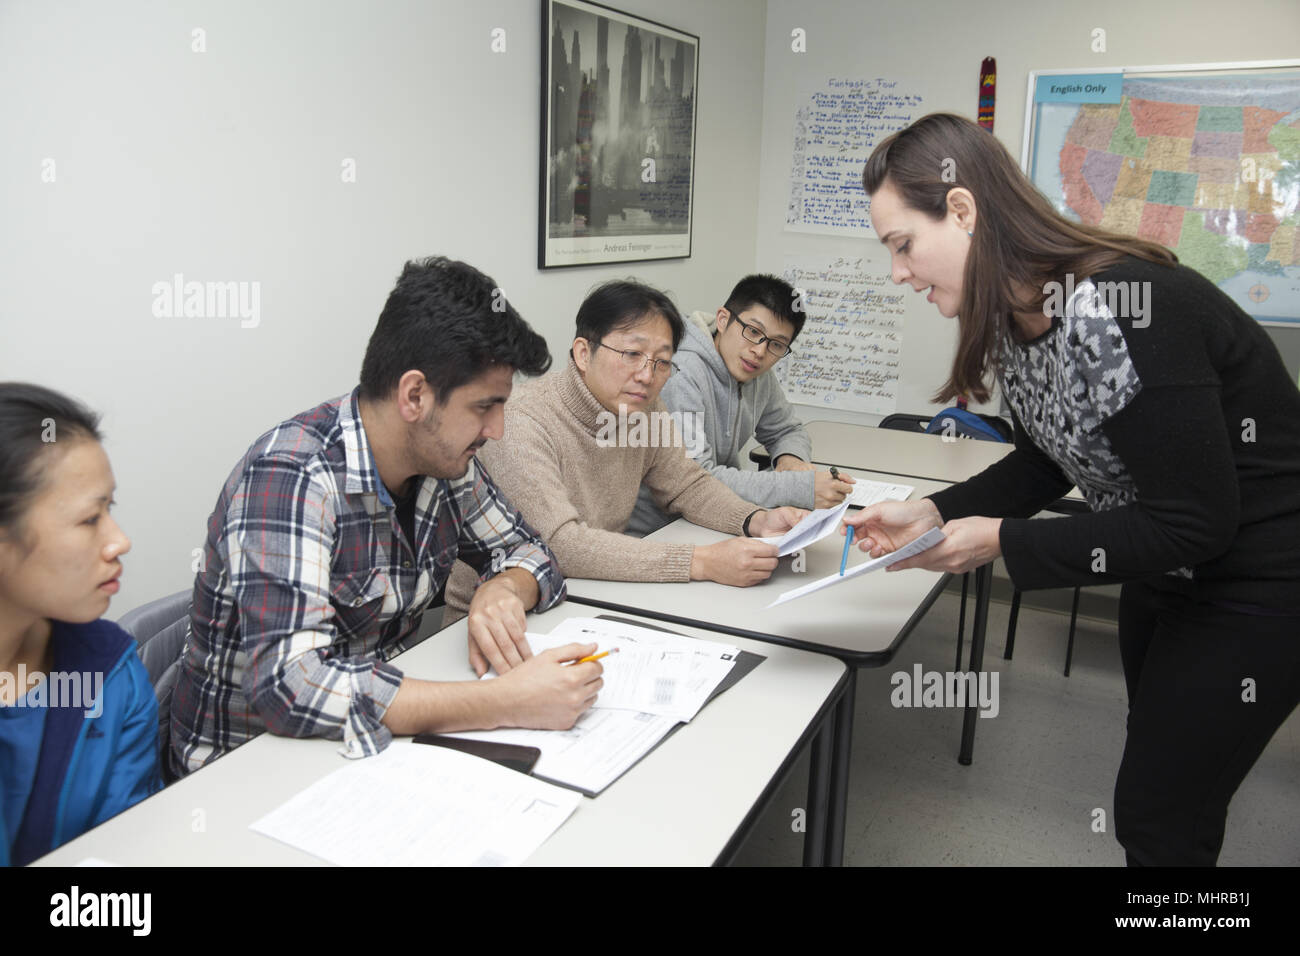 Les immigrants récents étudier l'anglais dans un centre communautaire dans le Lower East Side, Manhattan, New York City. Banque D'Images